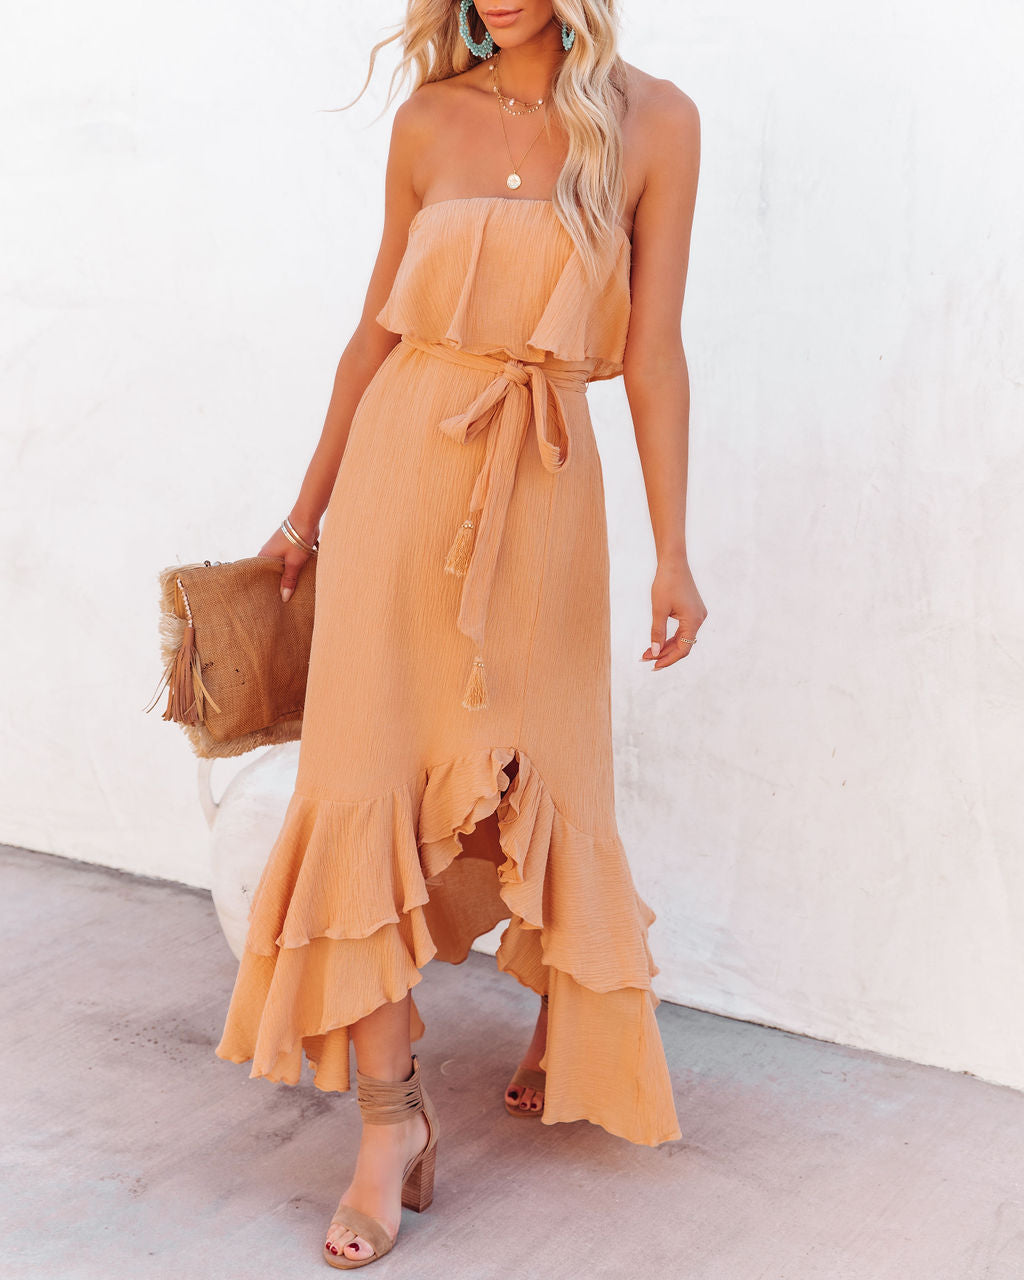 Rosemont Cotton Linen Strapless High Low Maxi Dress - Peach